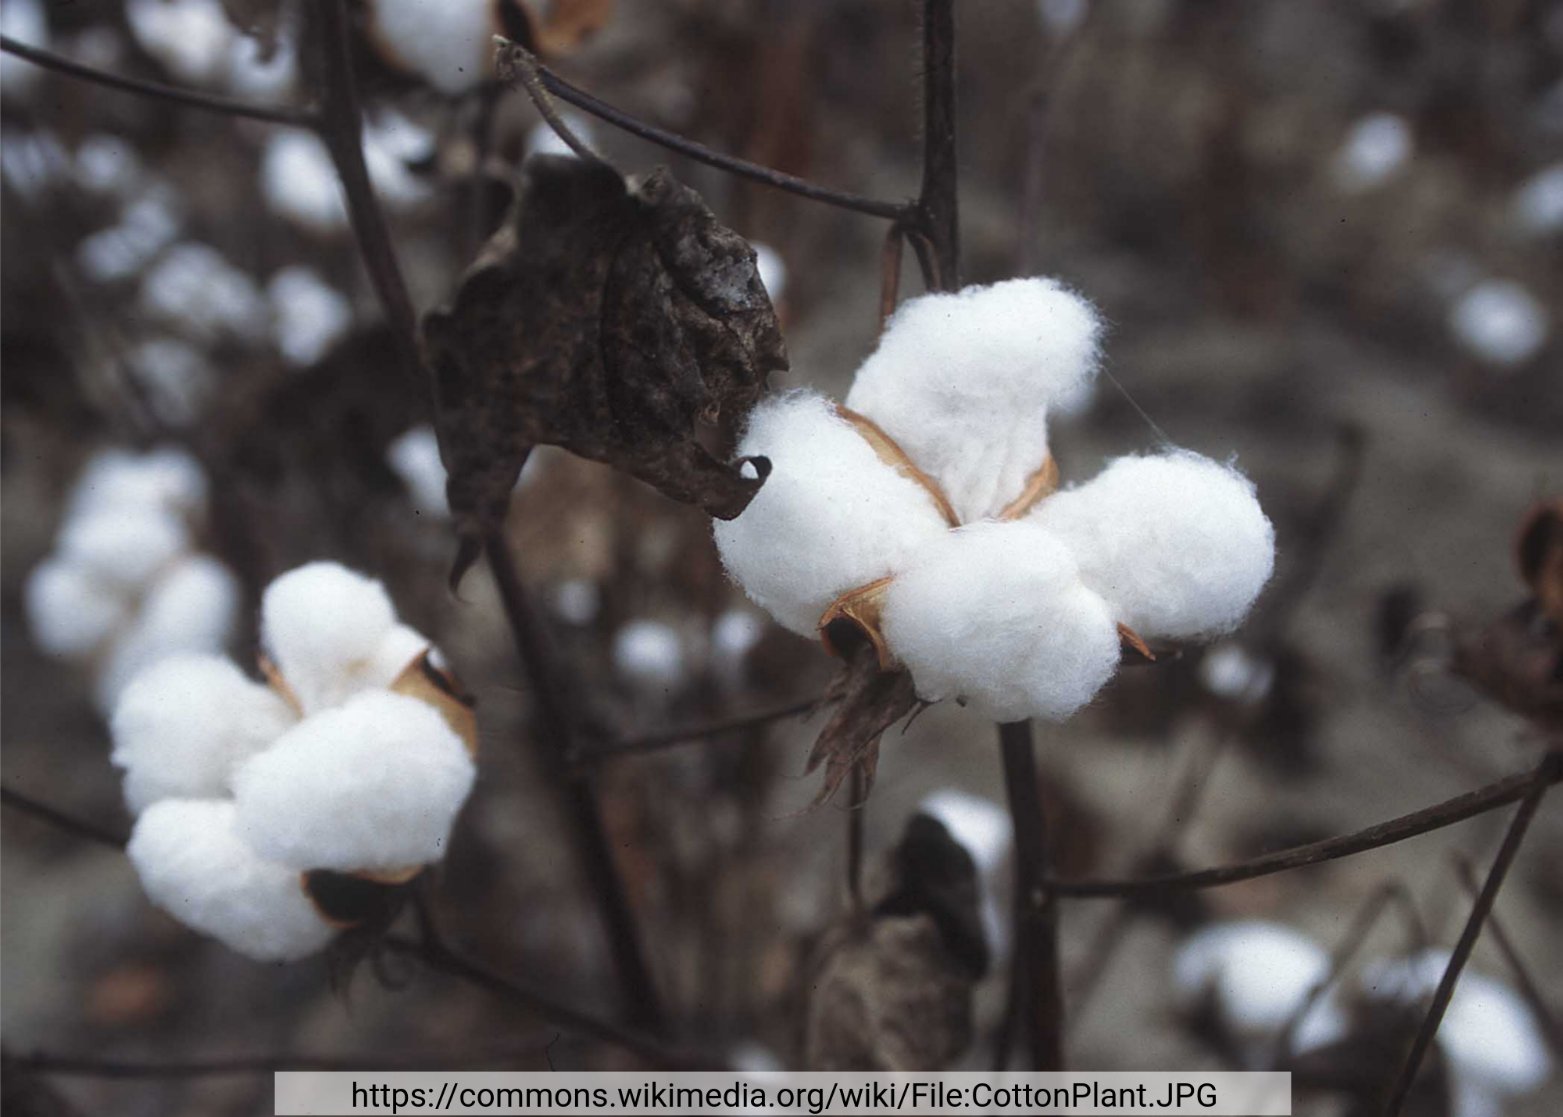 Anthocyanin accumulation in cotton (Tweet #70)